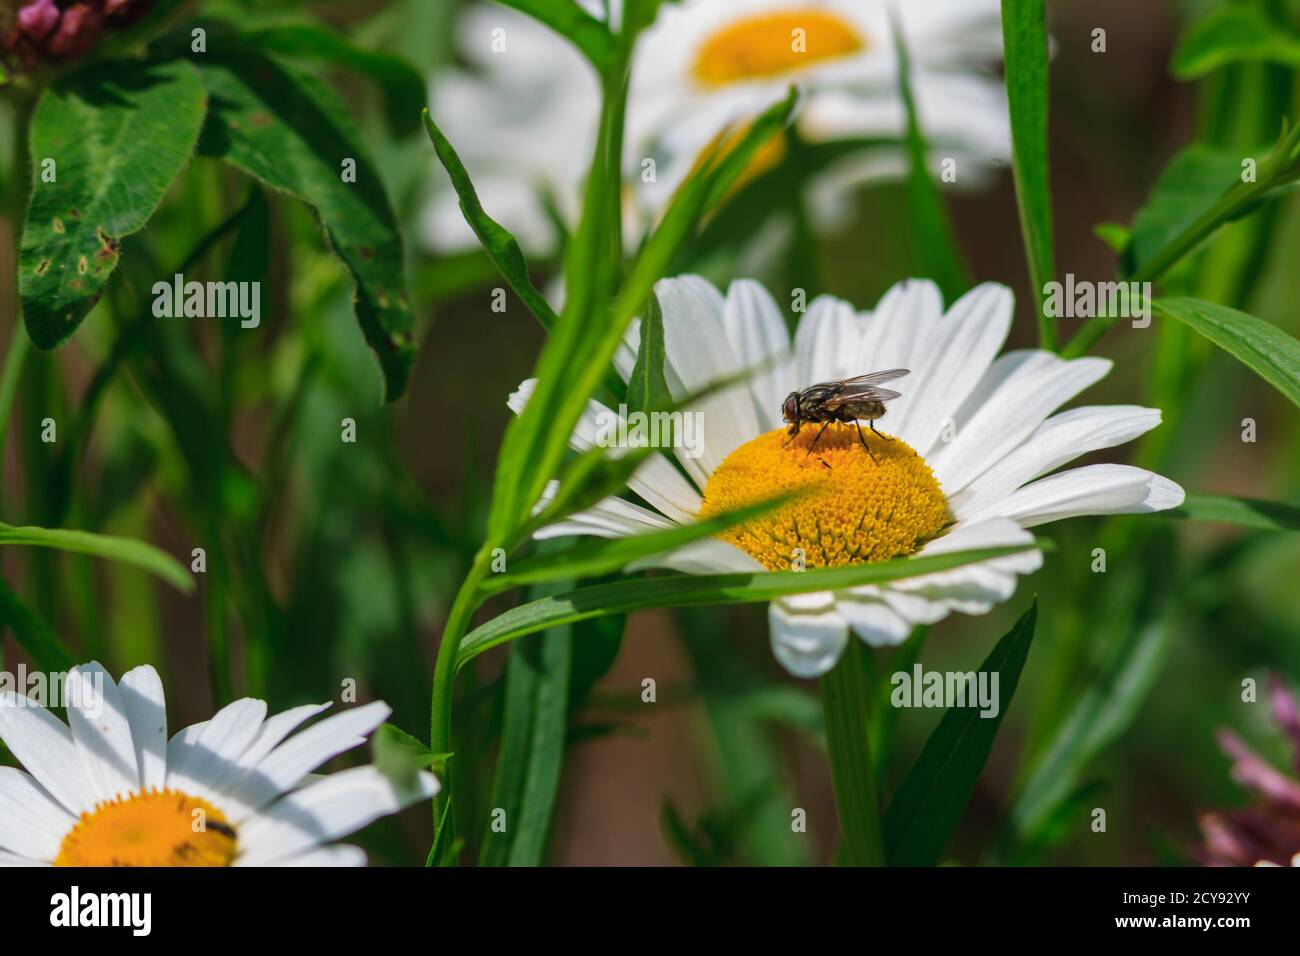 A fly on a daisy Stock Photo